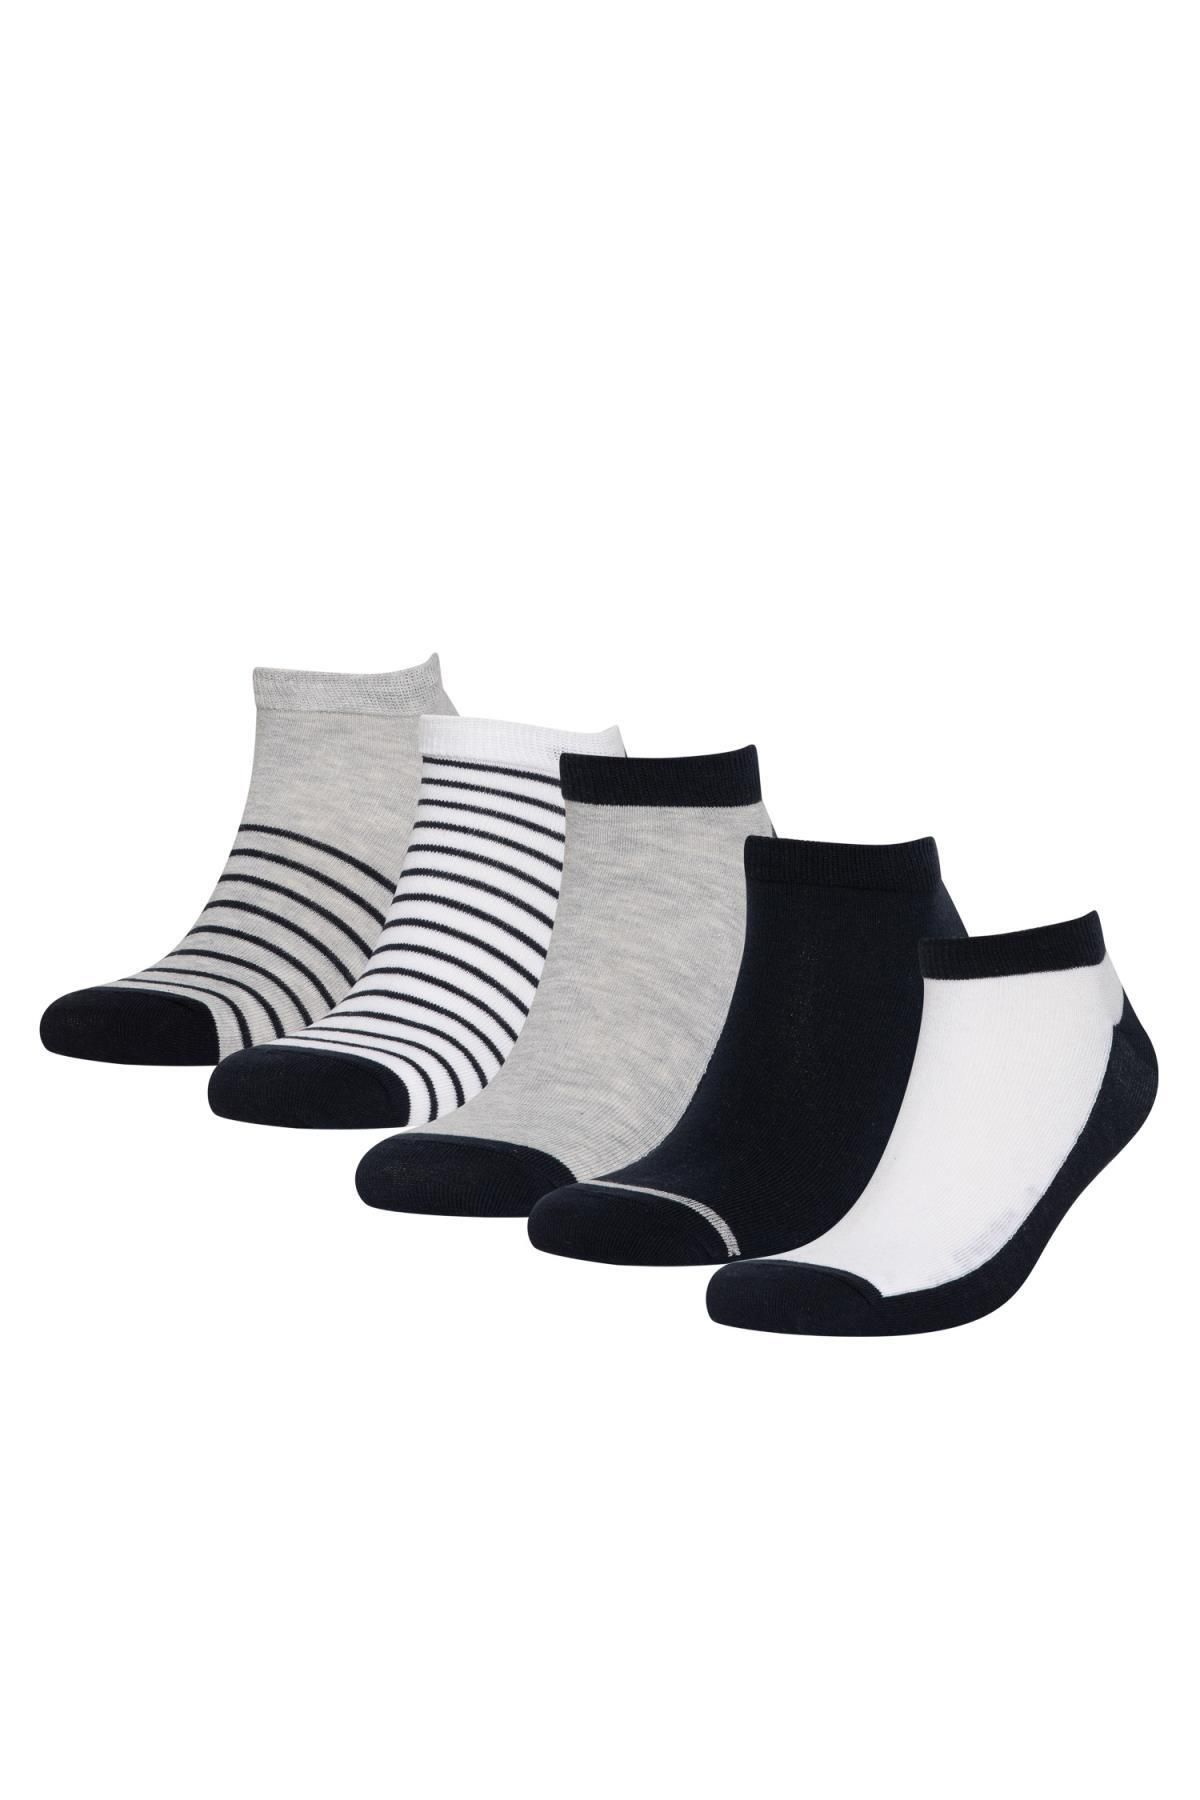 Defacto Erkek Çizgili 5'li Pamuklu Patik Çorap C0135axns